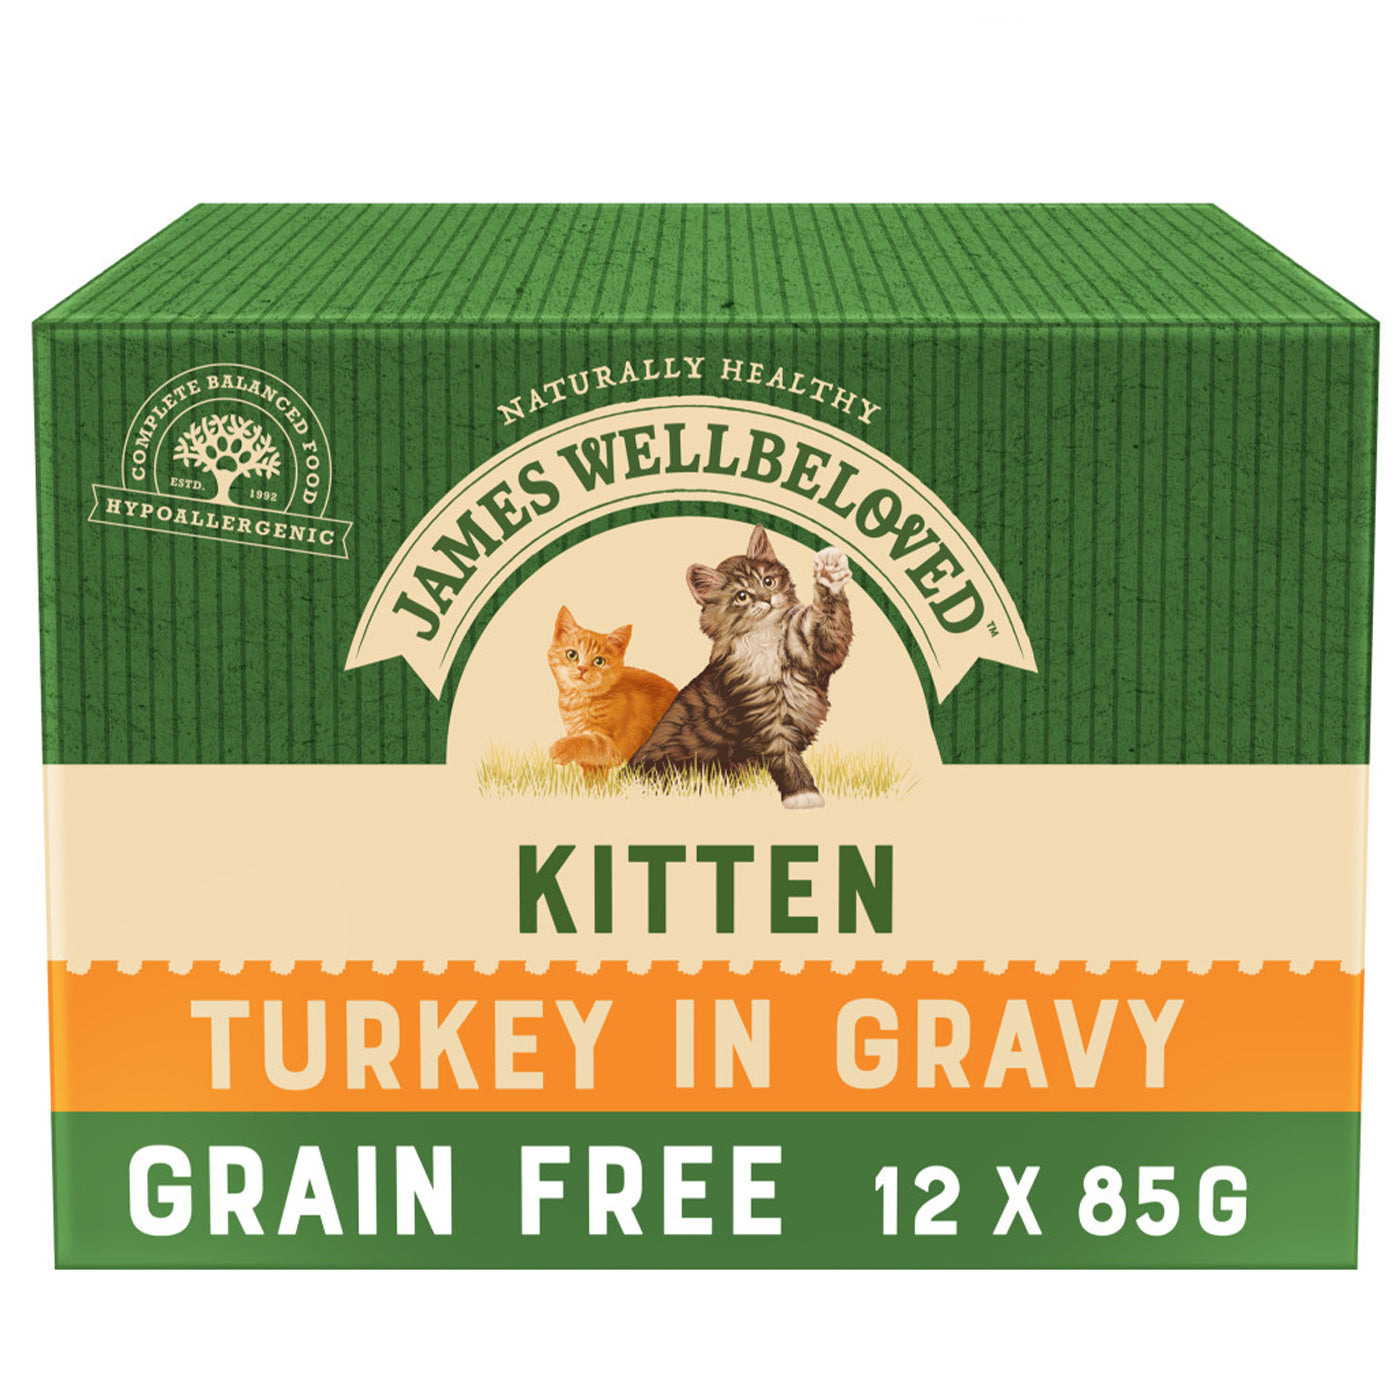 James Wellbeloved Kitten Turkey in Gravy Wet Food (12 x 85g)